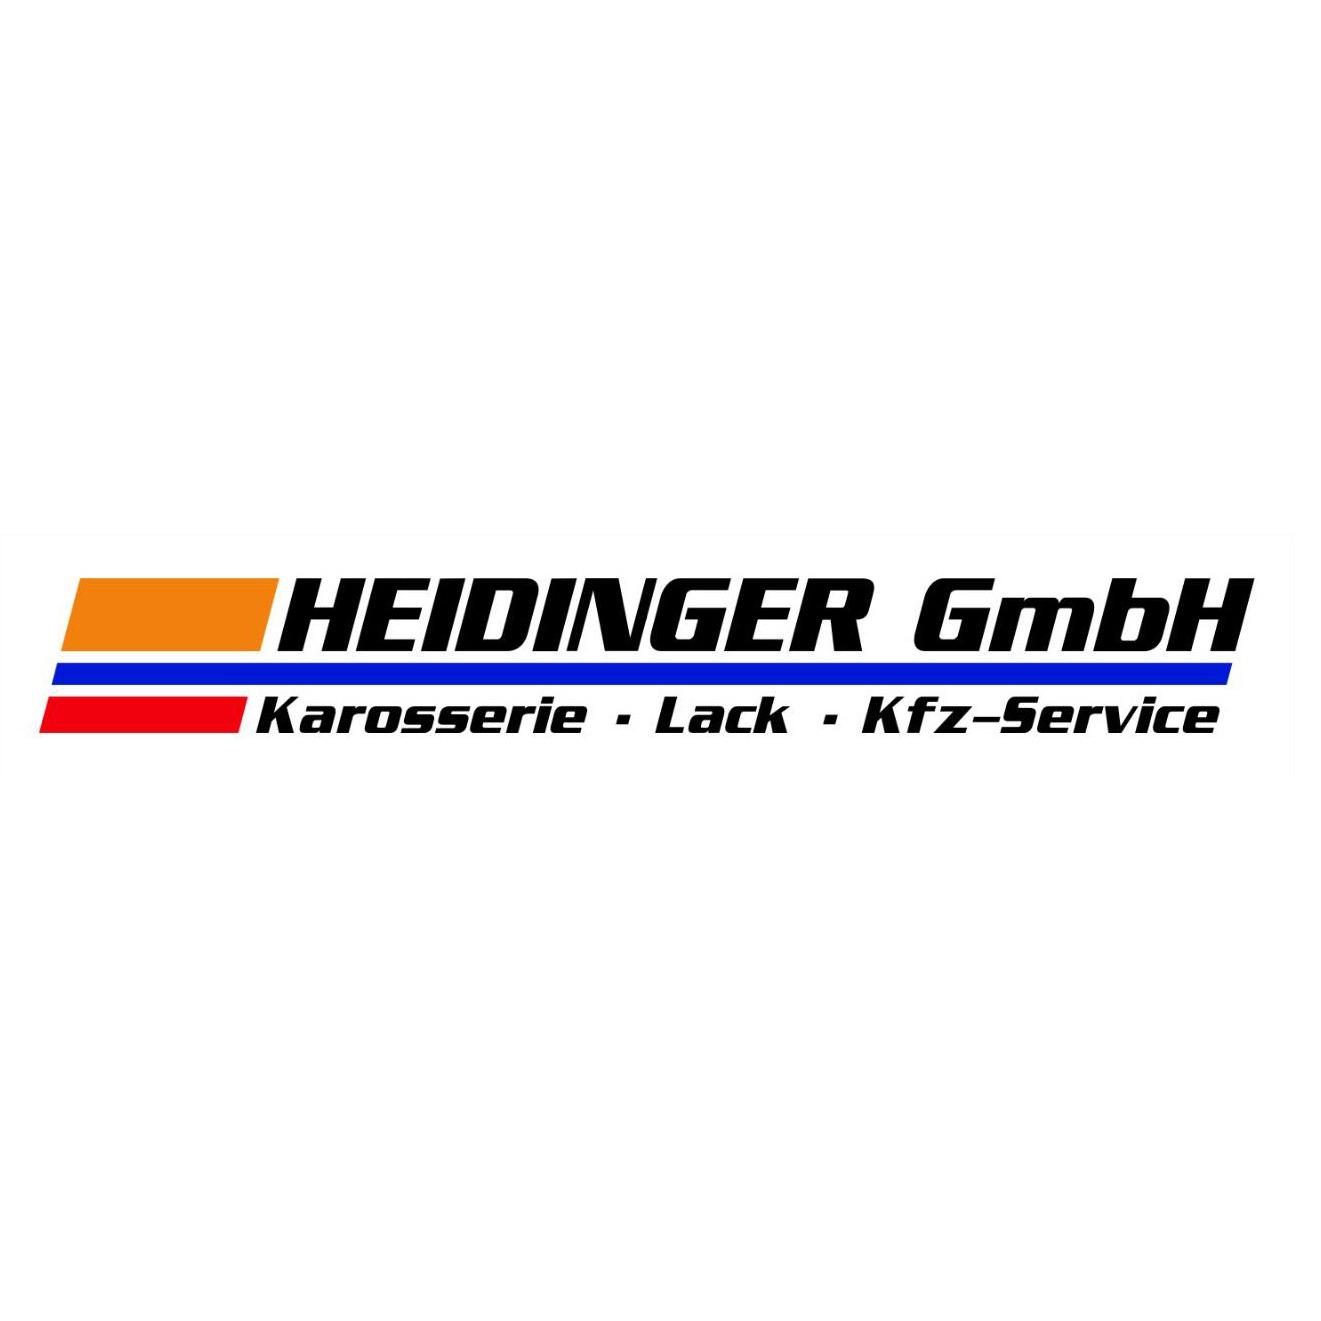 Heidinger GmbH Karosserie - Lack - Kfz-Service